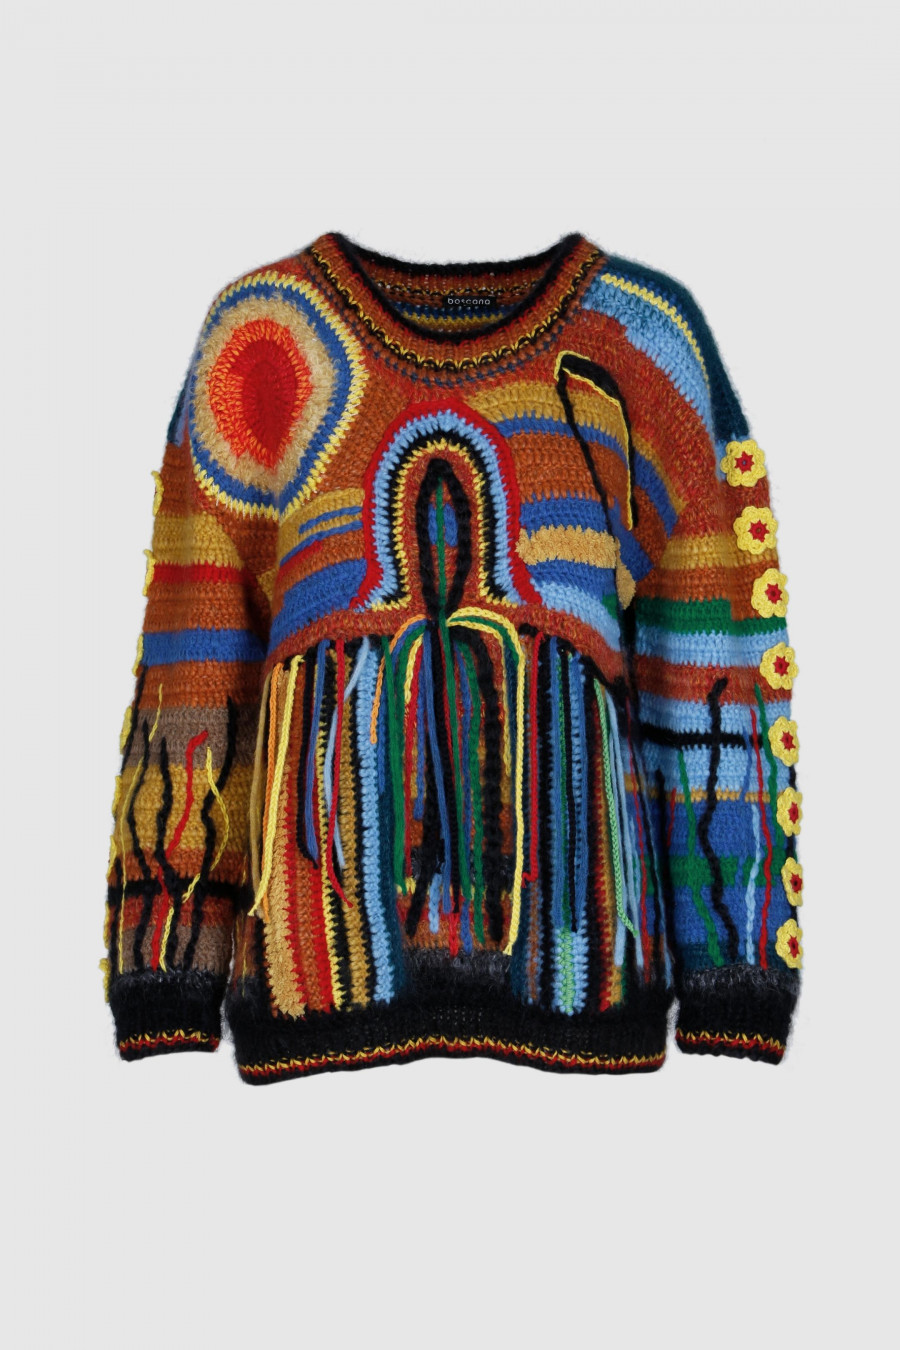 reine Handarbeit, gehÃ¤kelter bunter Pullover aus Wolle, unterschiedliche Materialien, bunt, Hippie, Luxus